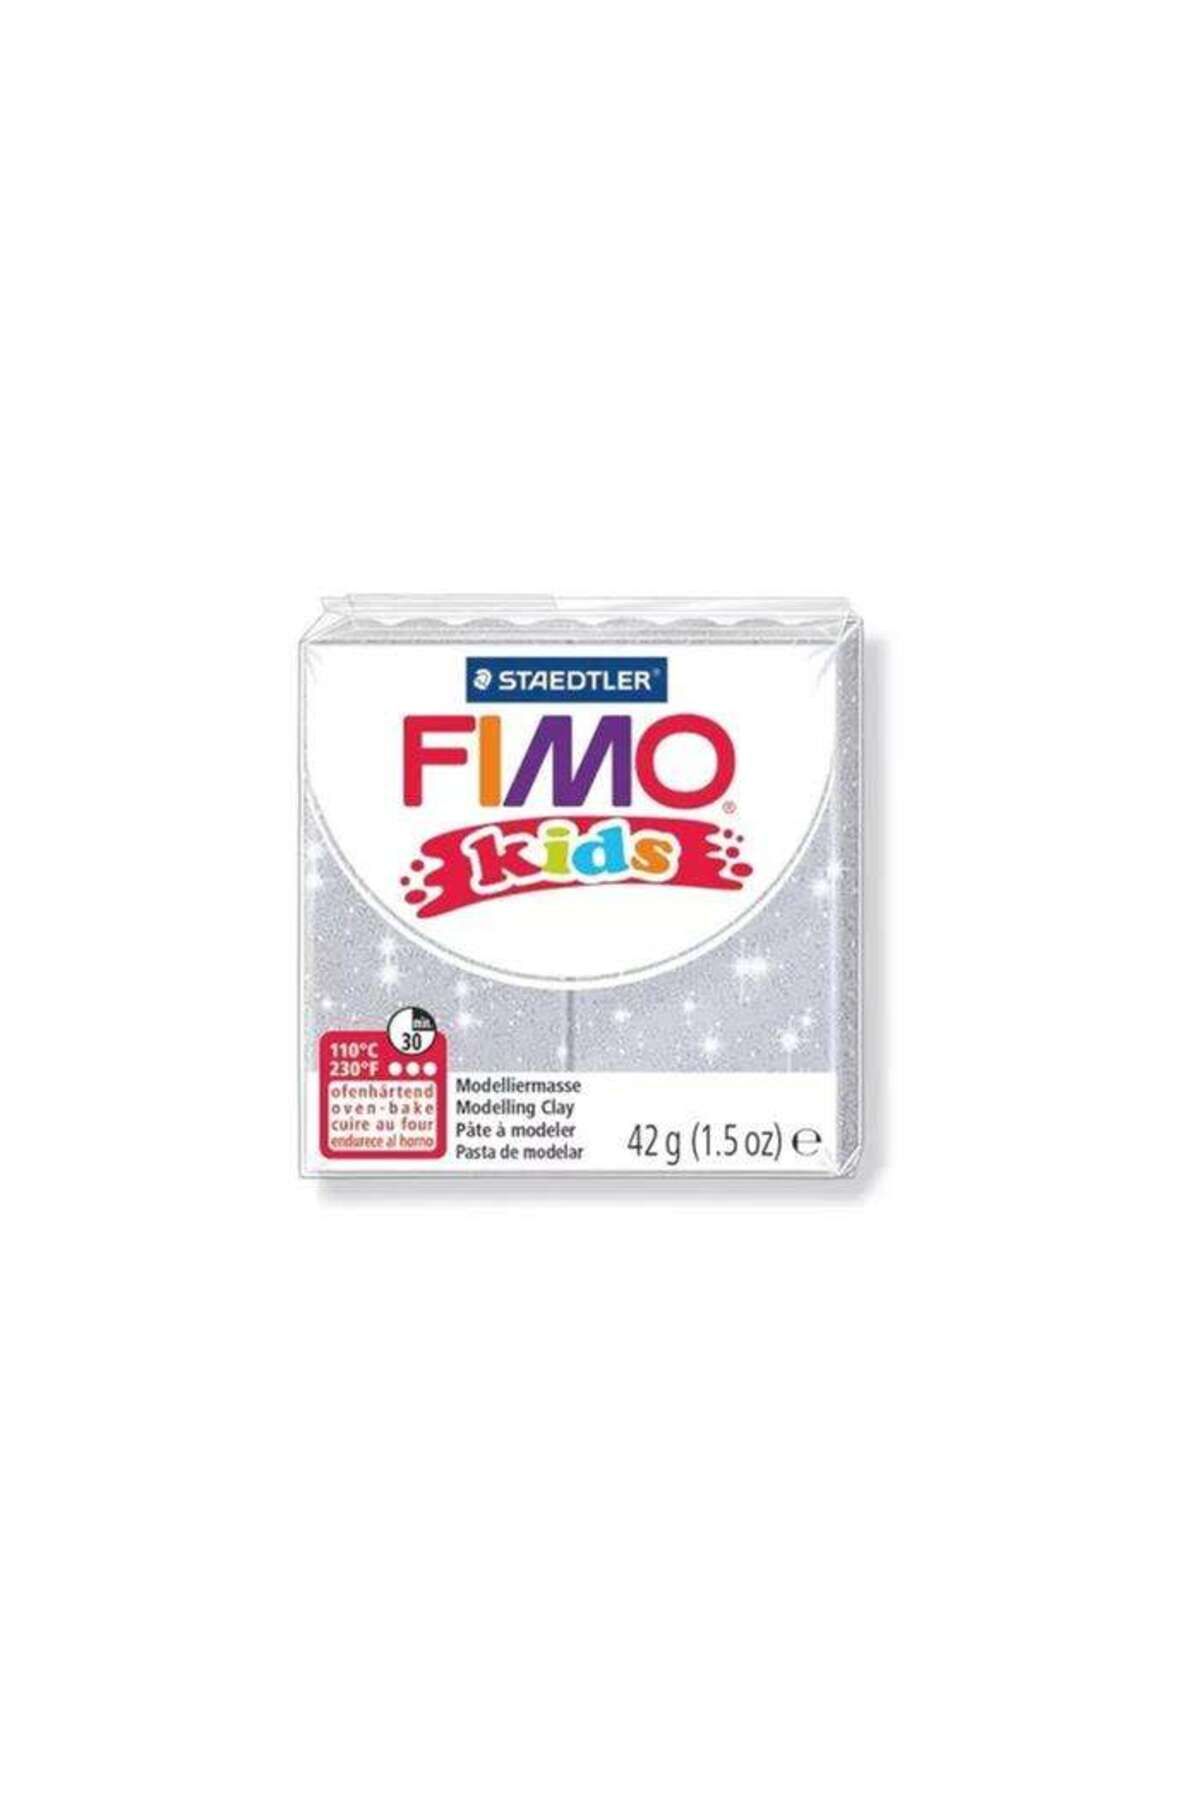 Staedtler Fimo Kids Modelleme Kili 42 g Silver Glitter 812